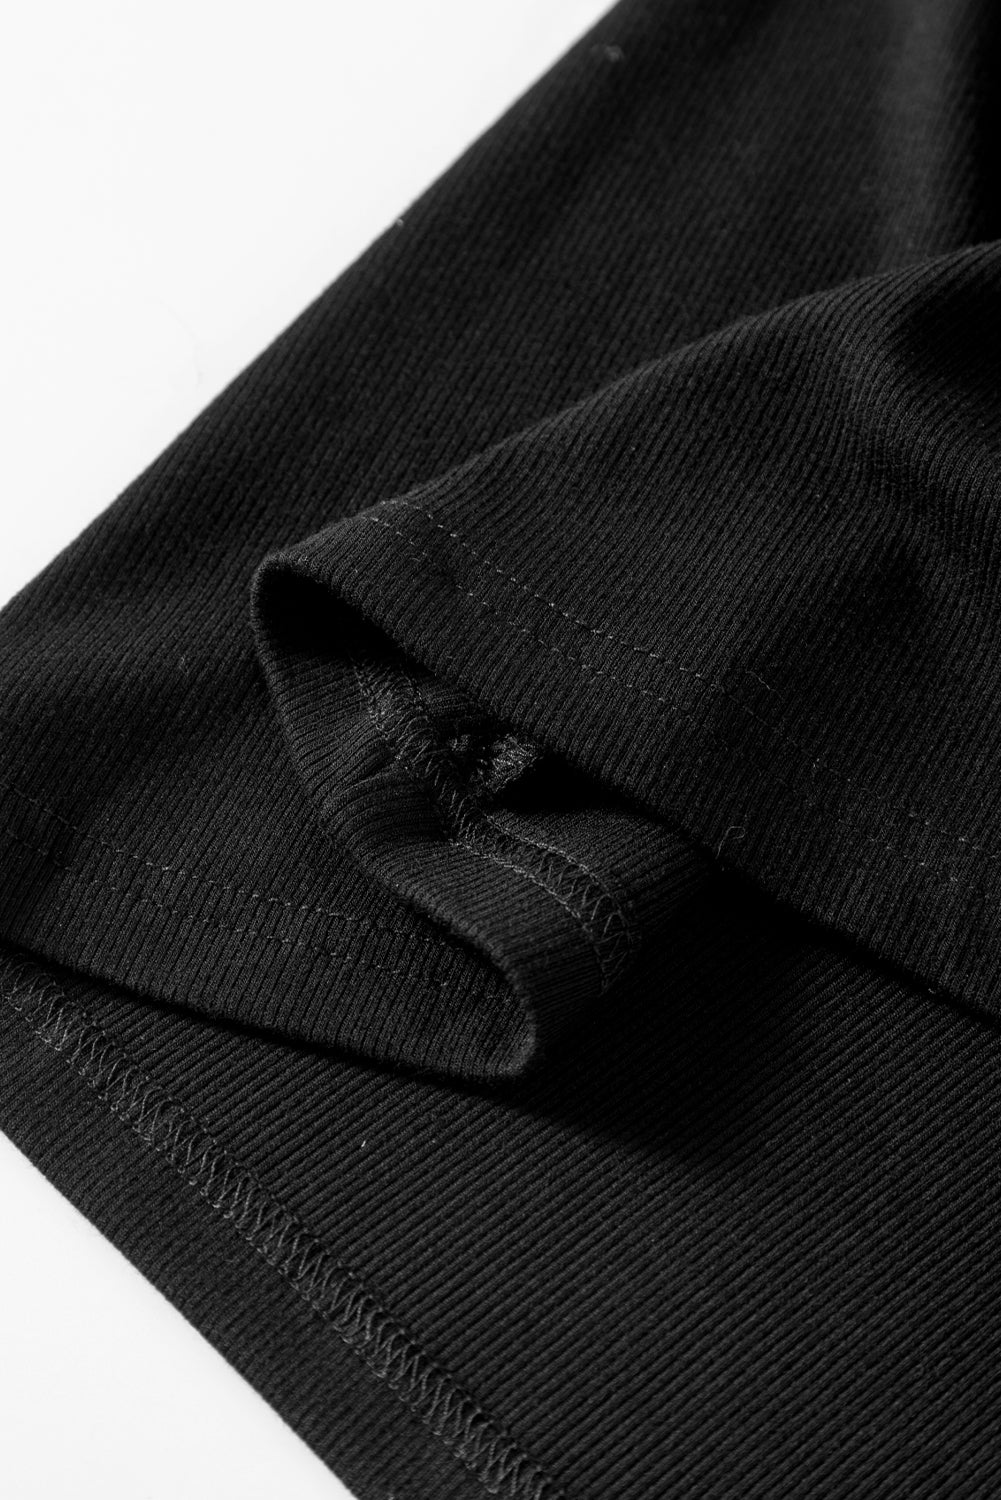 Schwarzes, halbärmliges Oberteil mit Stern-Pailletten-Spleißen